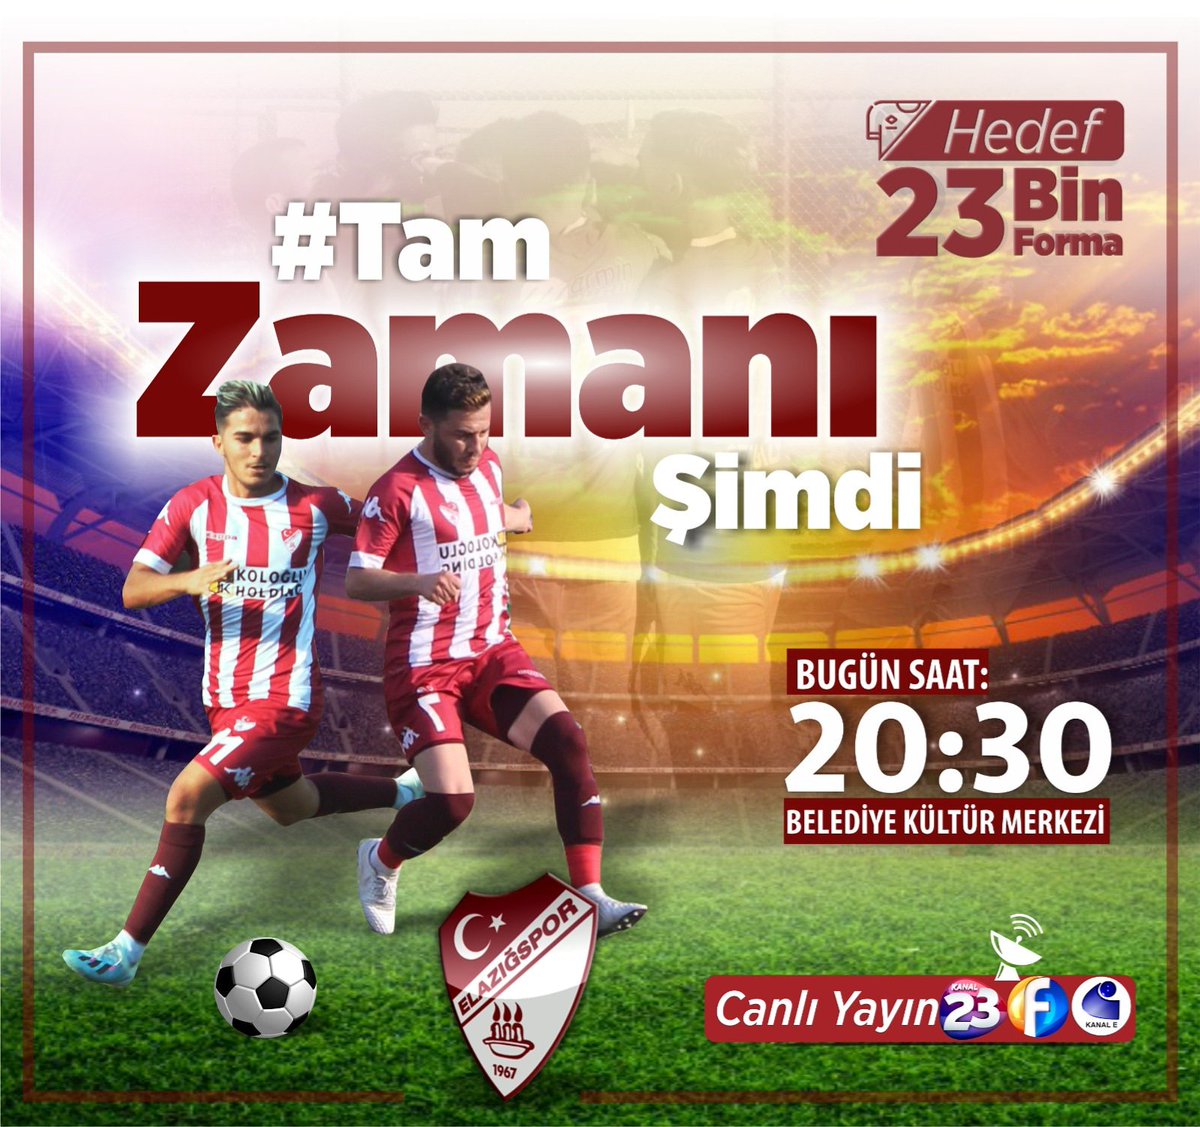 Bugün Saat 20.30'da Kanal 23, Kanal Fırat ve Kanal E televizyonlarının ortak canlı yayını ile Elazığspor’umuzu eski günlerine kavuşturabilmek için 23 bin forma kampanyamızı başlatıyoruz. #tamzamanısimdi